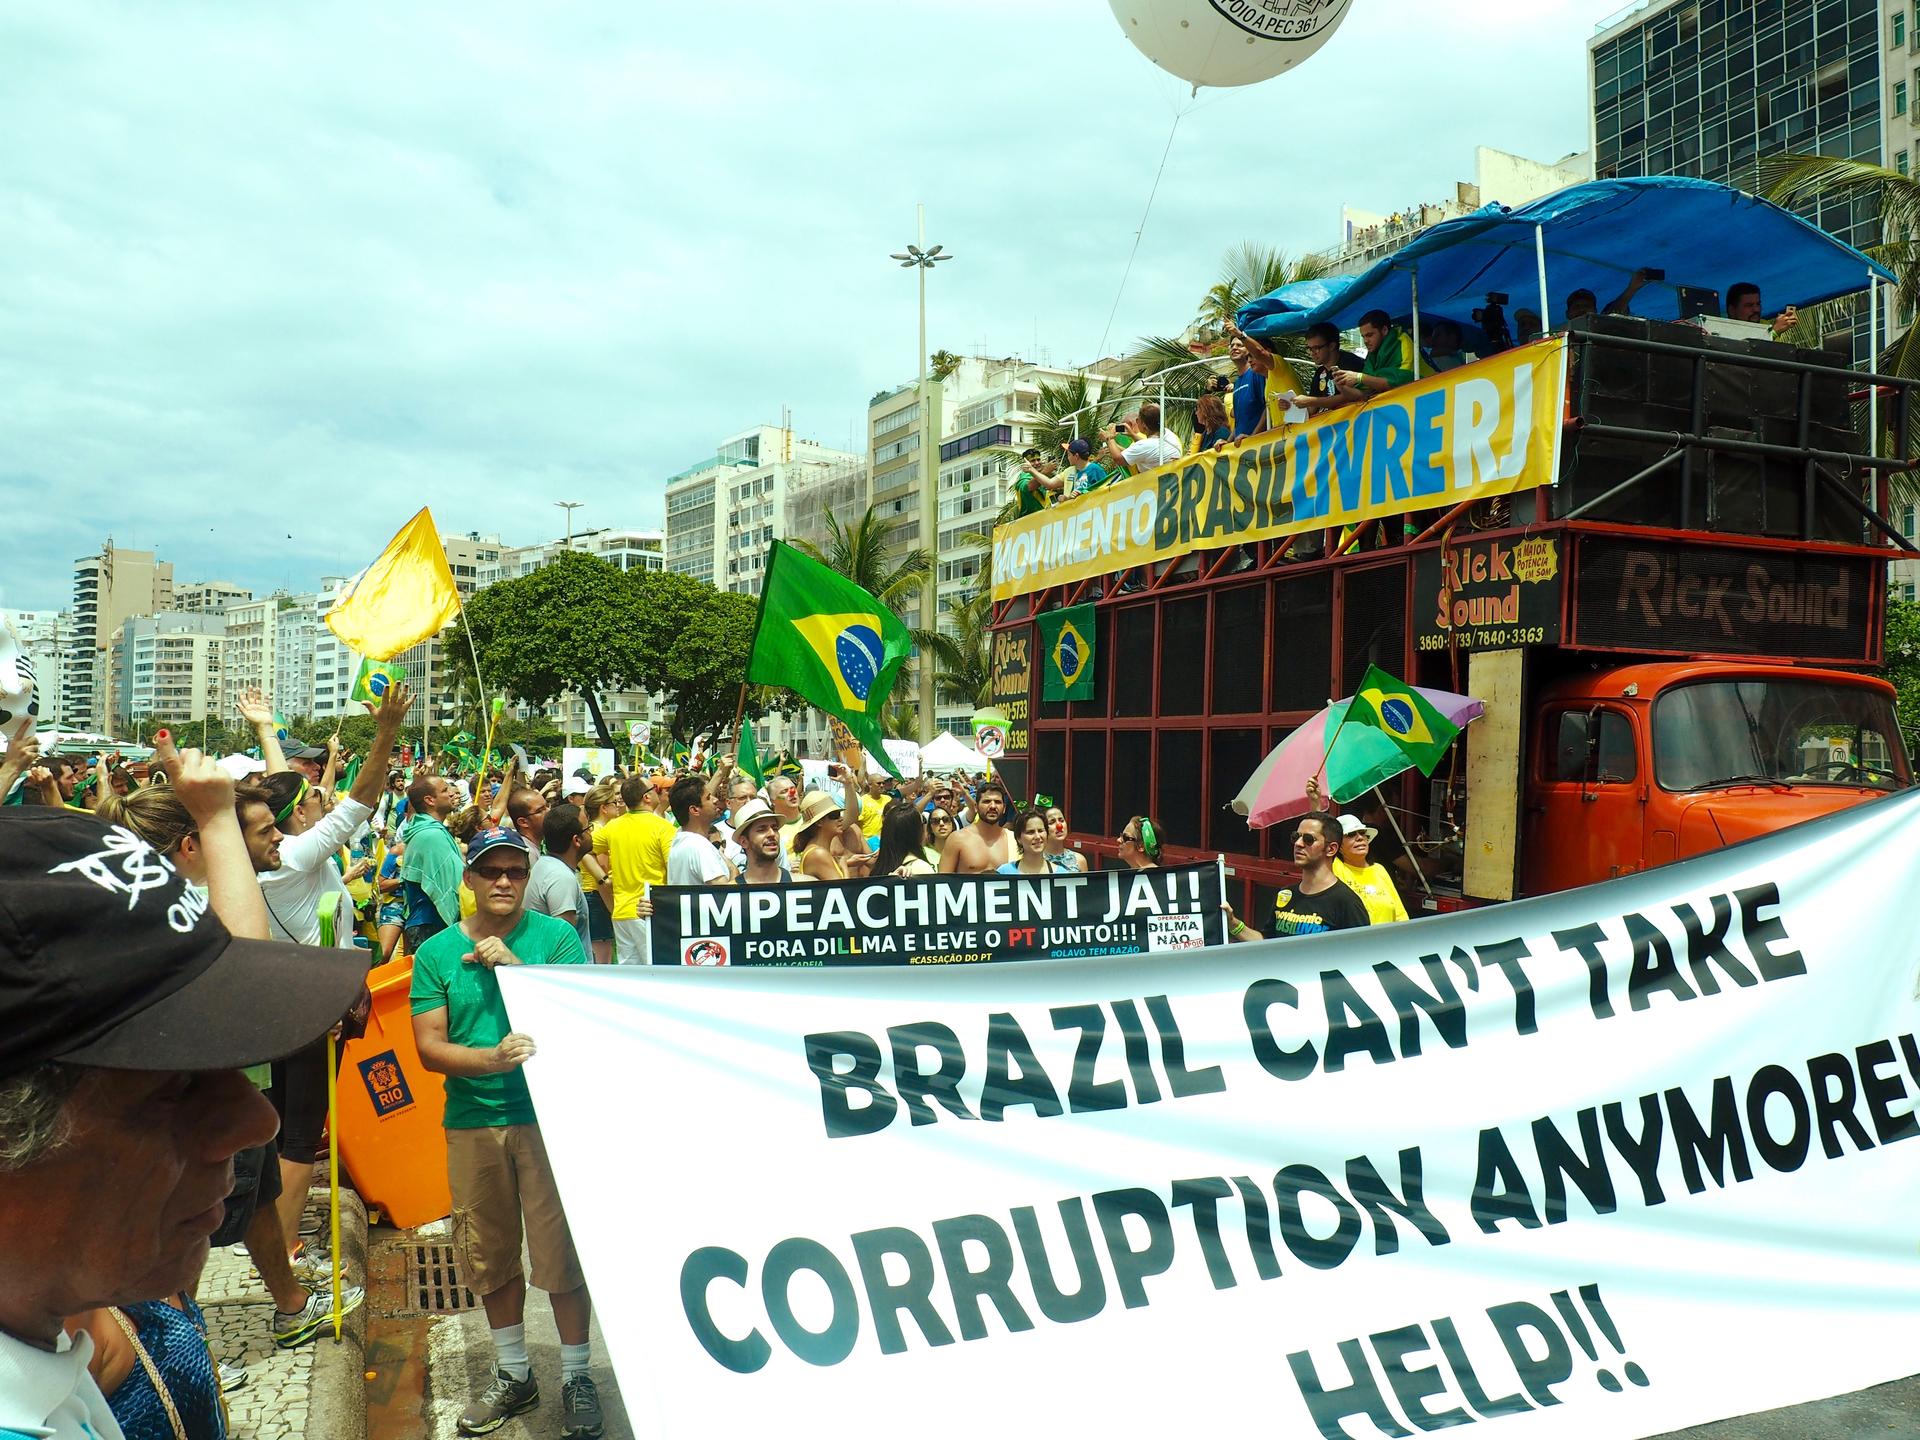 Protesters in Rio